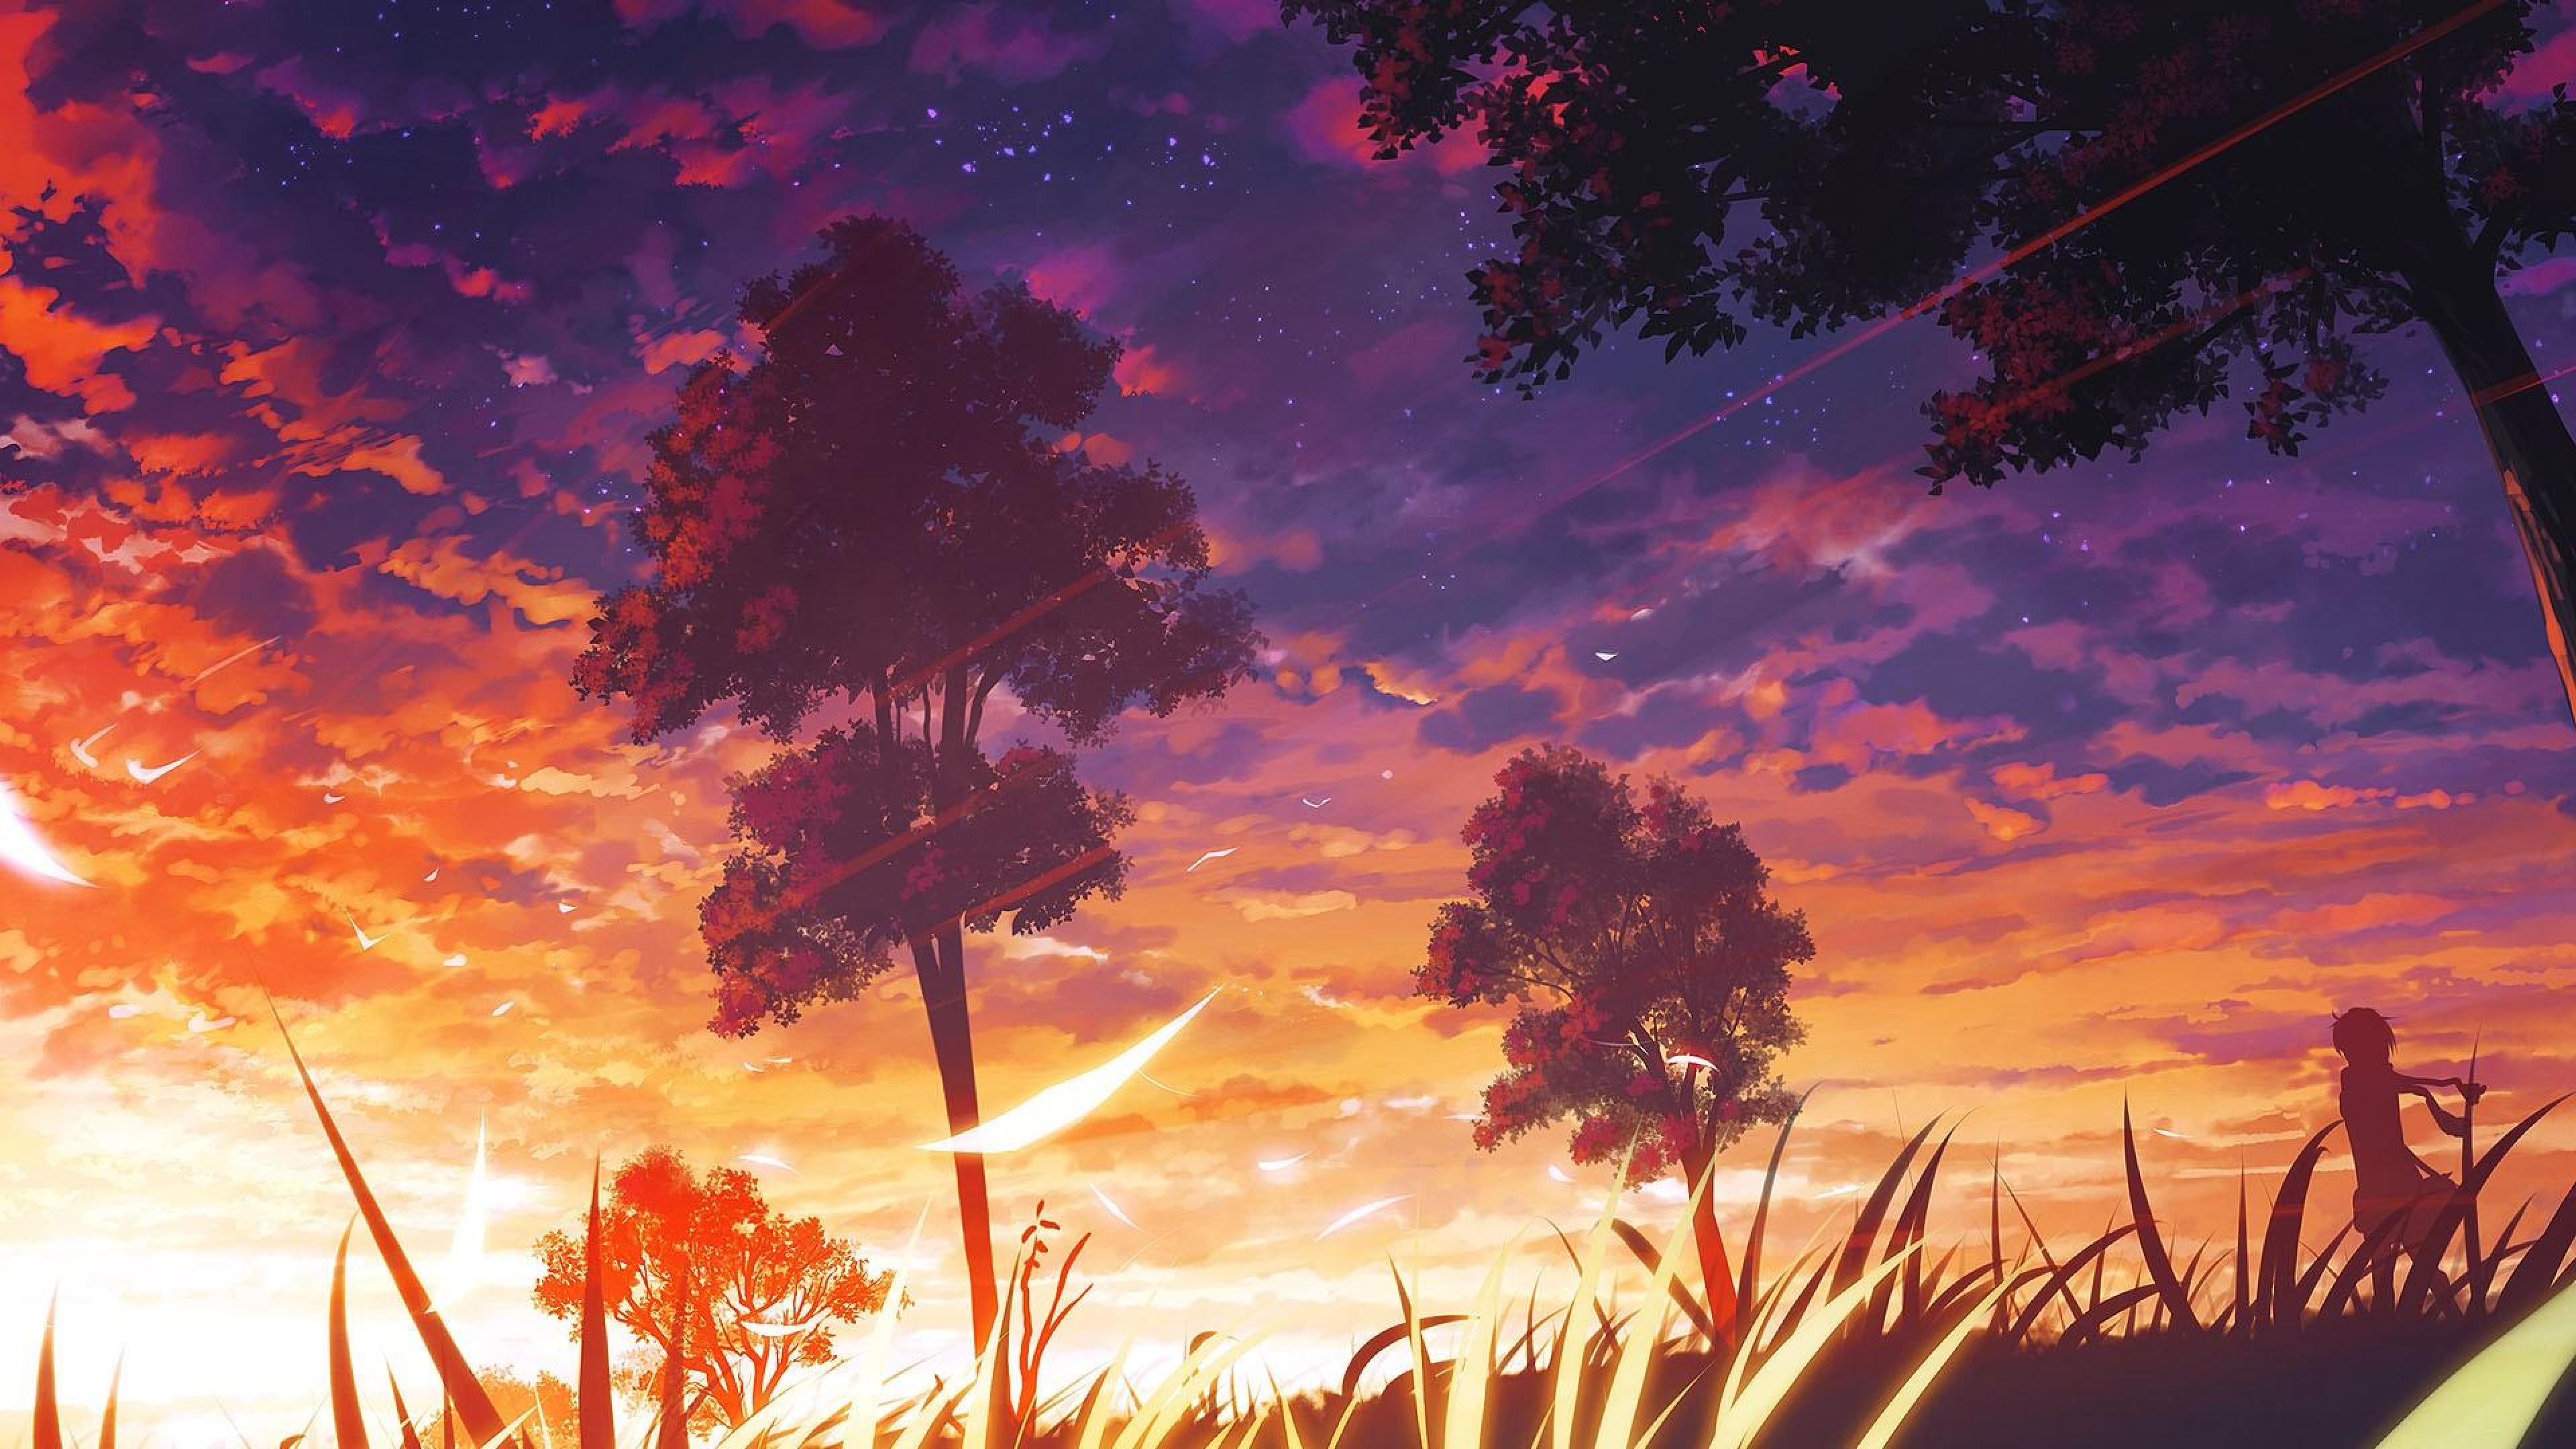 Hình nền anime rừng: Với chủ đề rừng, hình nền anime của chúng tôi cung cấp cho bạn những hình ảnh đầy thần thoại và bí ẩn. Thiên nhiên hoang dã được tái hiện một cách sống động, sự kết hợp giữa anime và rừng mang đến cho bạn một trải nghiệm độc đáo không thể bỏ qua.